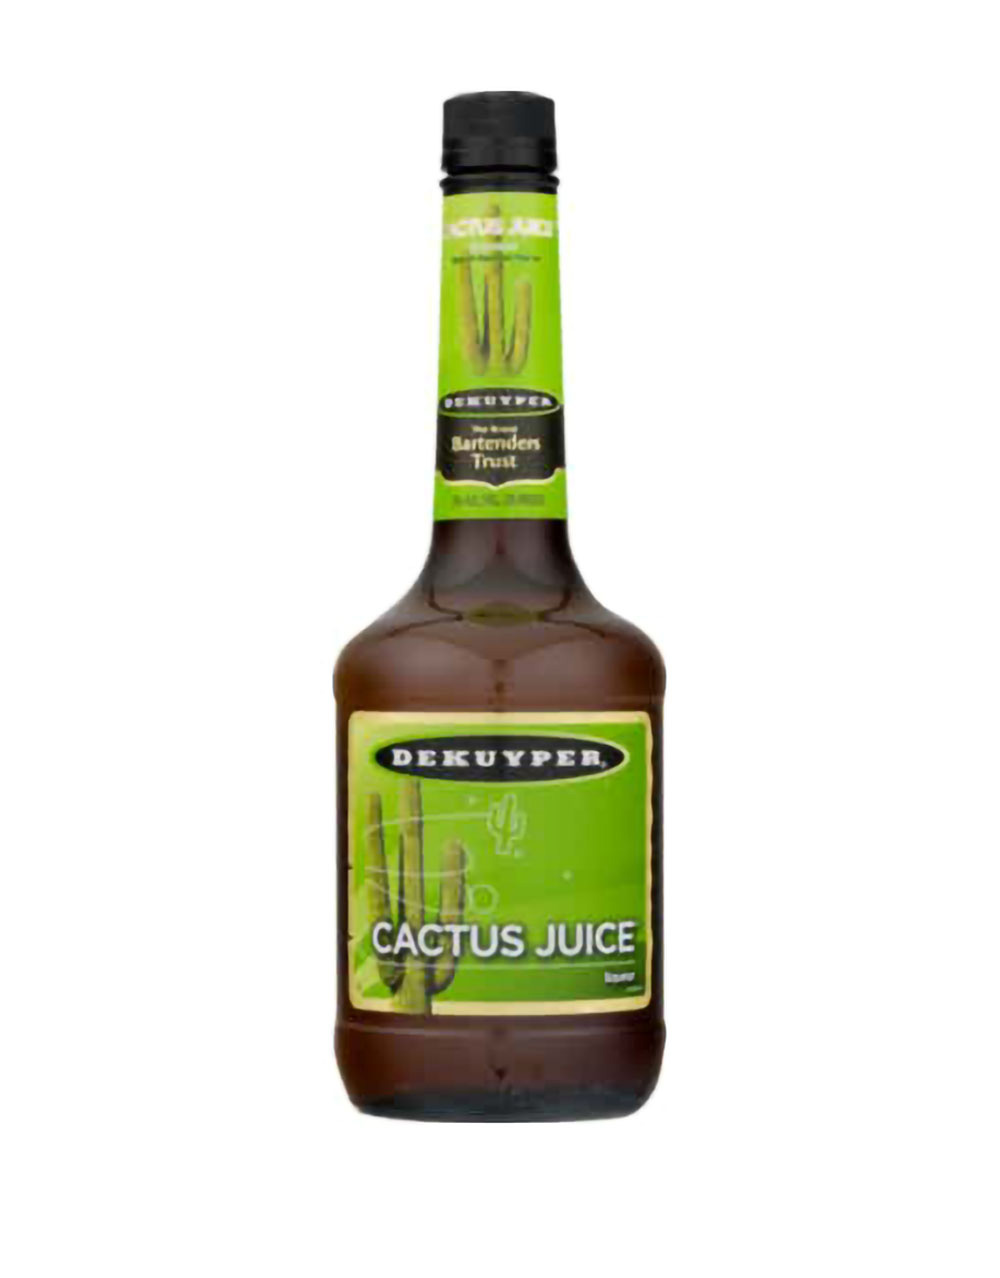 Dekuyper Cactus Juice Schanpps